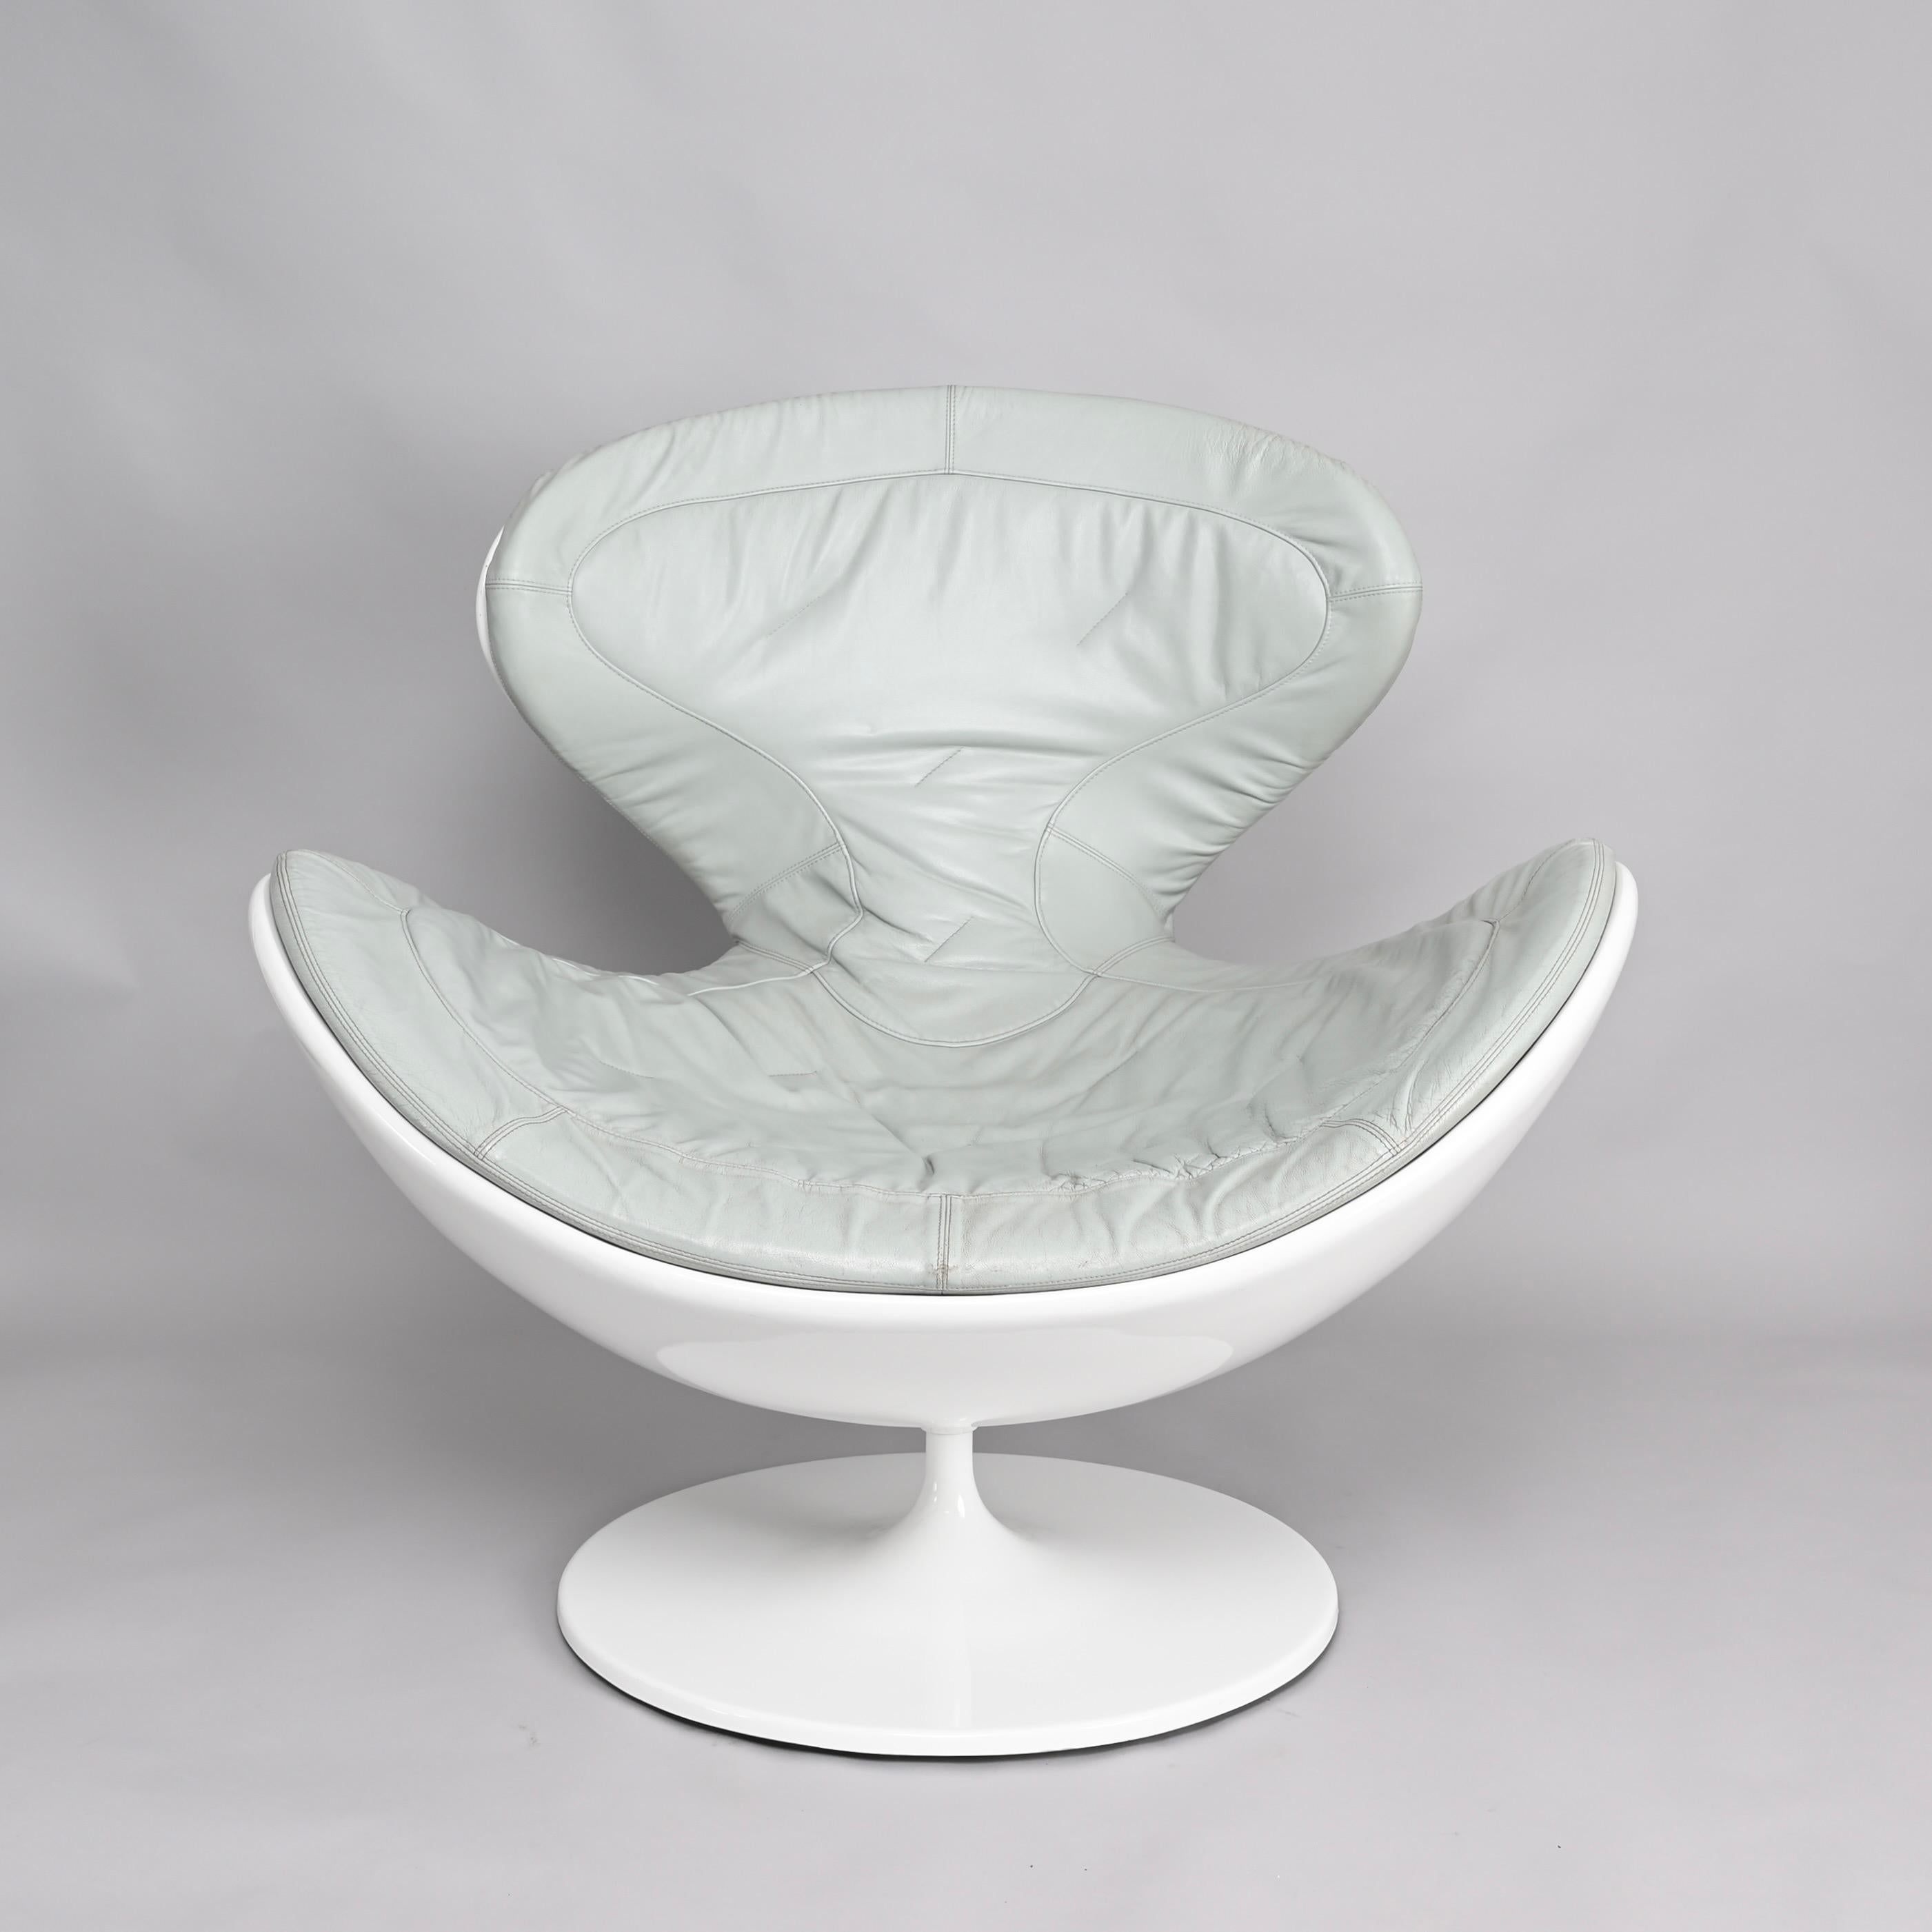 Fantastischer Jetsons-Drehsessel von Gugliemo Berchicci für Giovannetti in tollem grauen Leder mit weißer Glanzstruktur. Jetsons ist eine Hängematte, eine Chaiselongue, ein Thron, ein Nest und gleichzeitig dynamisch und modern.

Die Struktur dieses